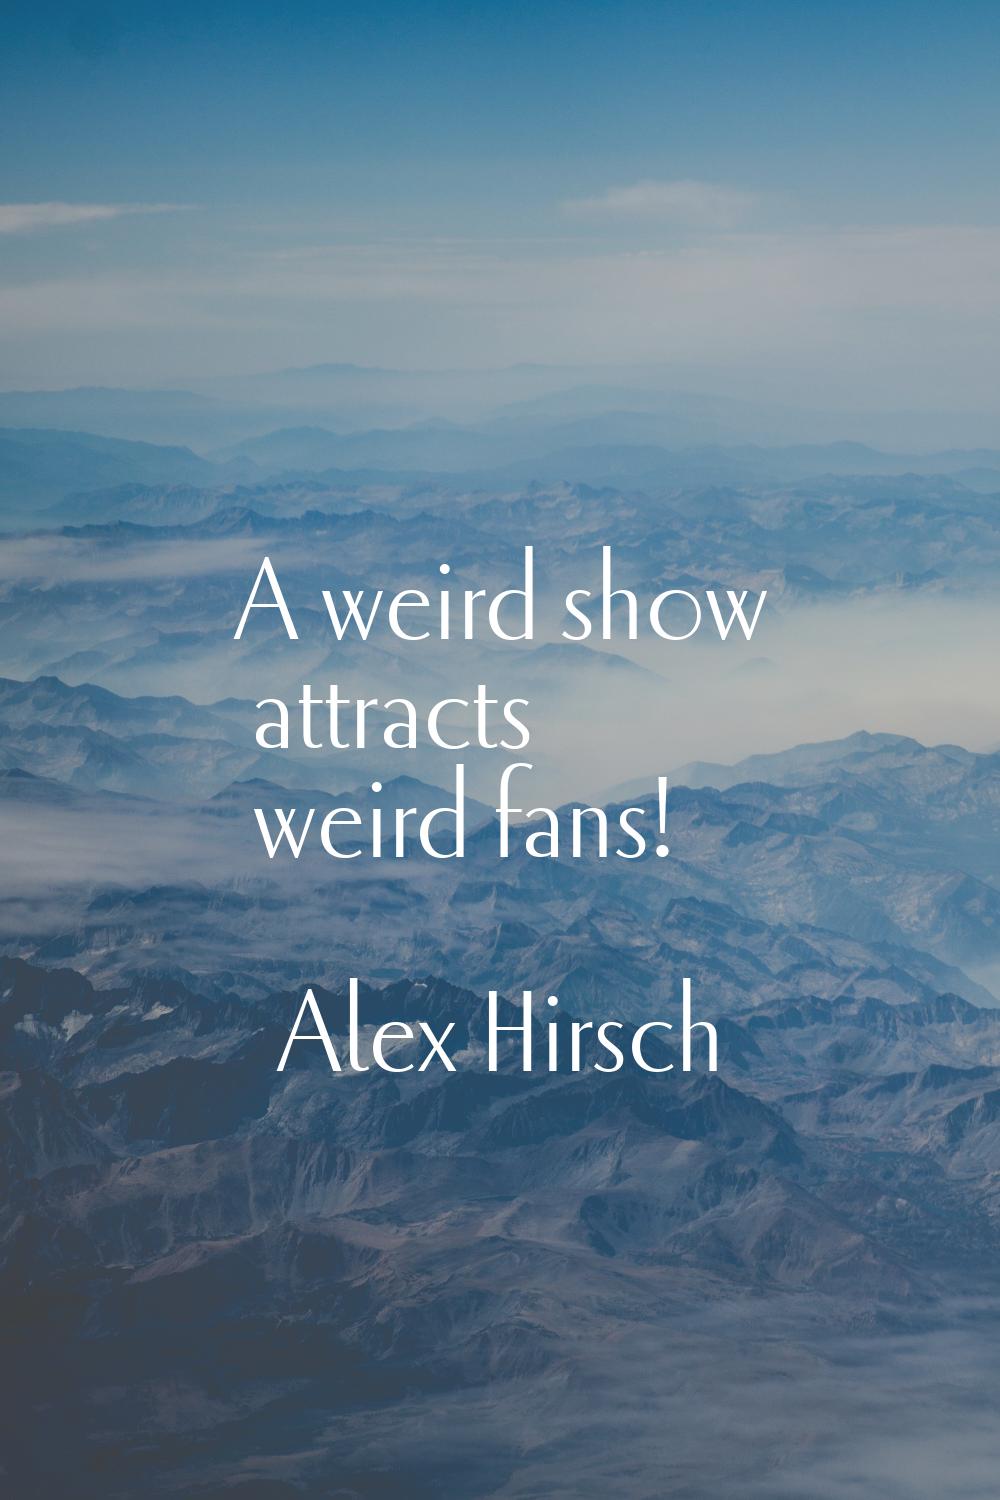 A weird show attracts weird fans!